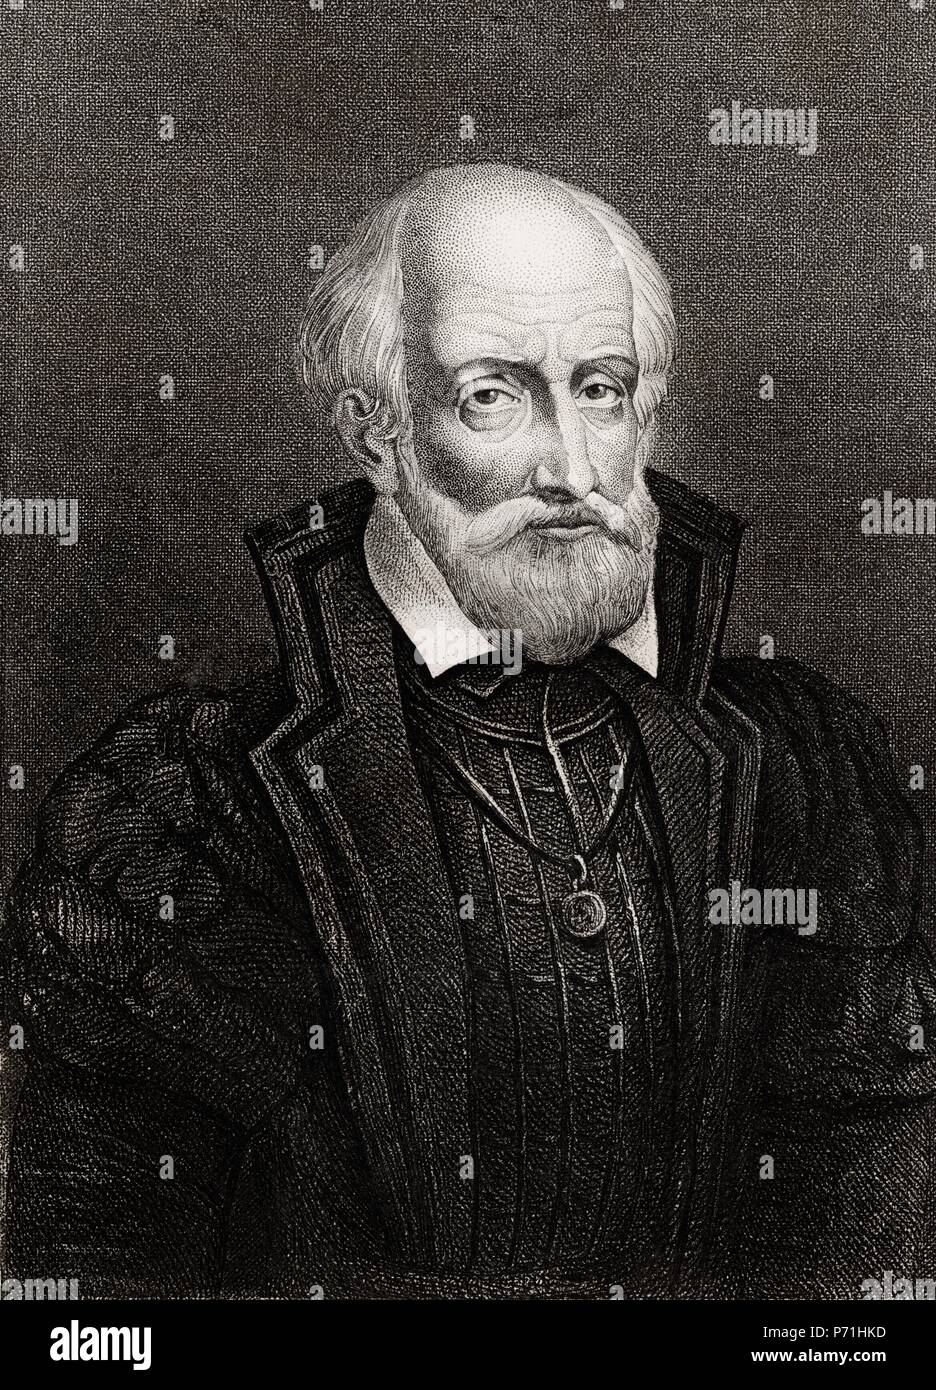 Gaspard de Coligny o Gaspard de Chatillon (1519-1572), noble francés, político y militar, líder de los hugonotes. Grabado de 1866. Stock Photo